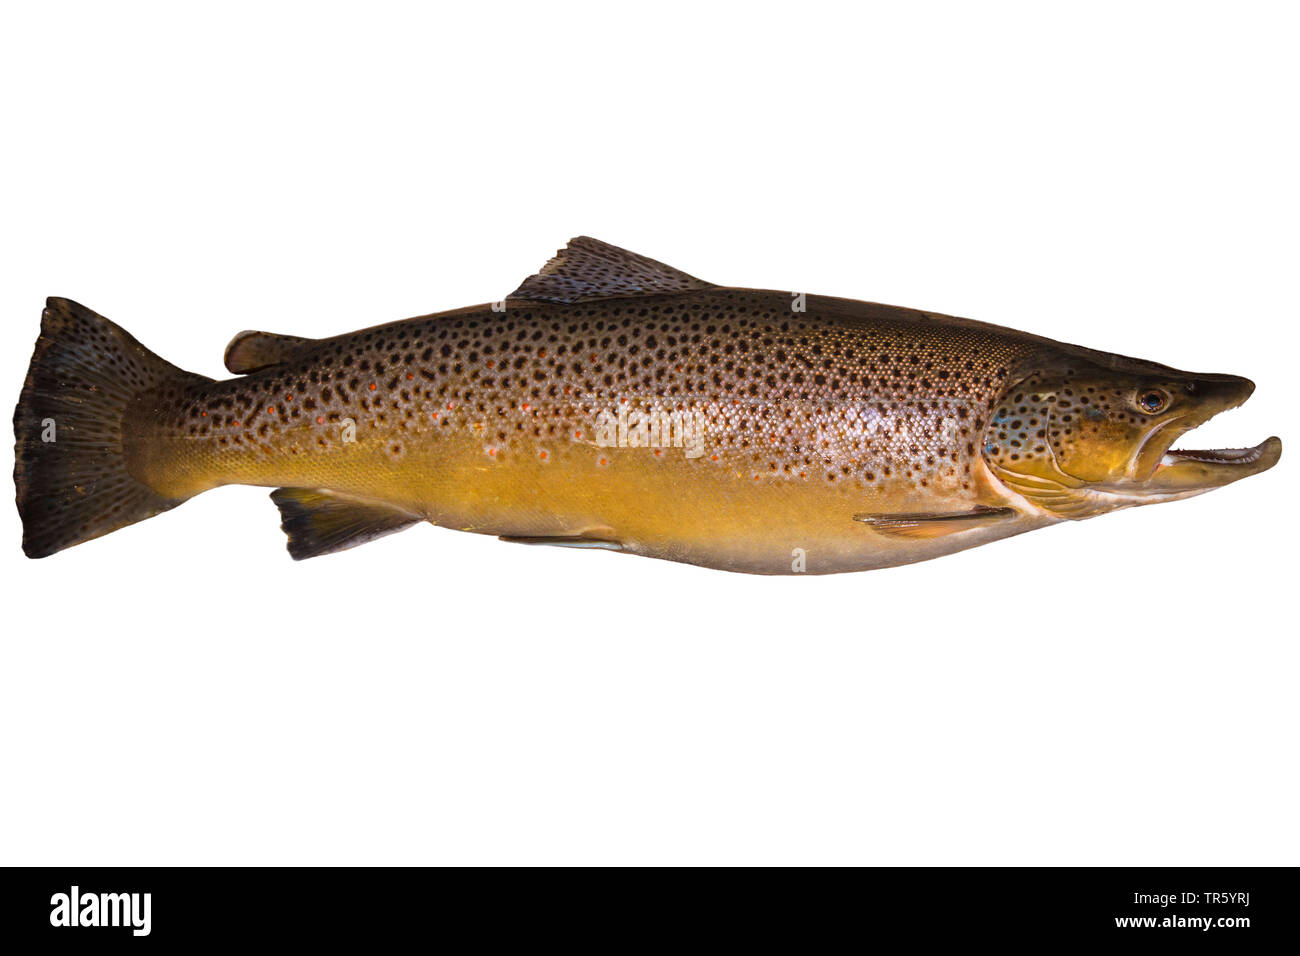 brown trout, river trout, brook trout (Salmo trutta fario), milkner, cutout Stock Photo